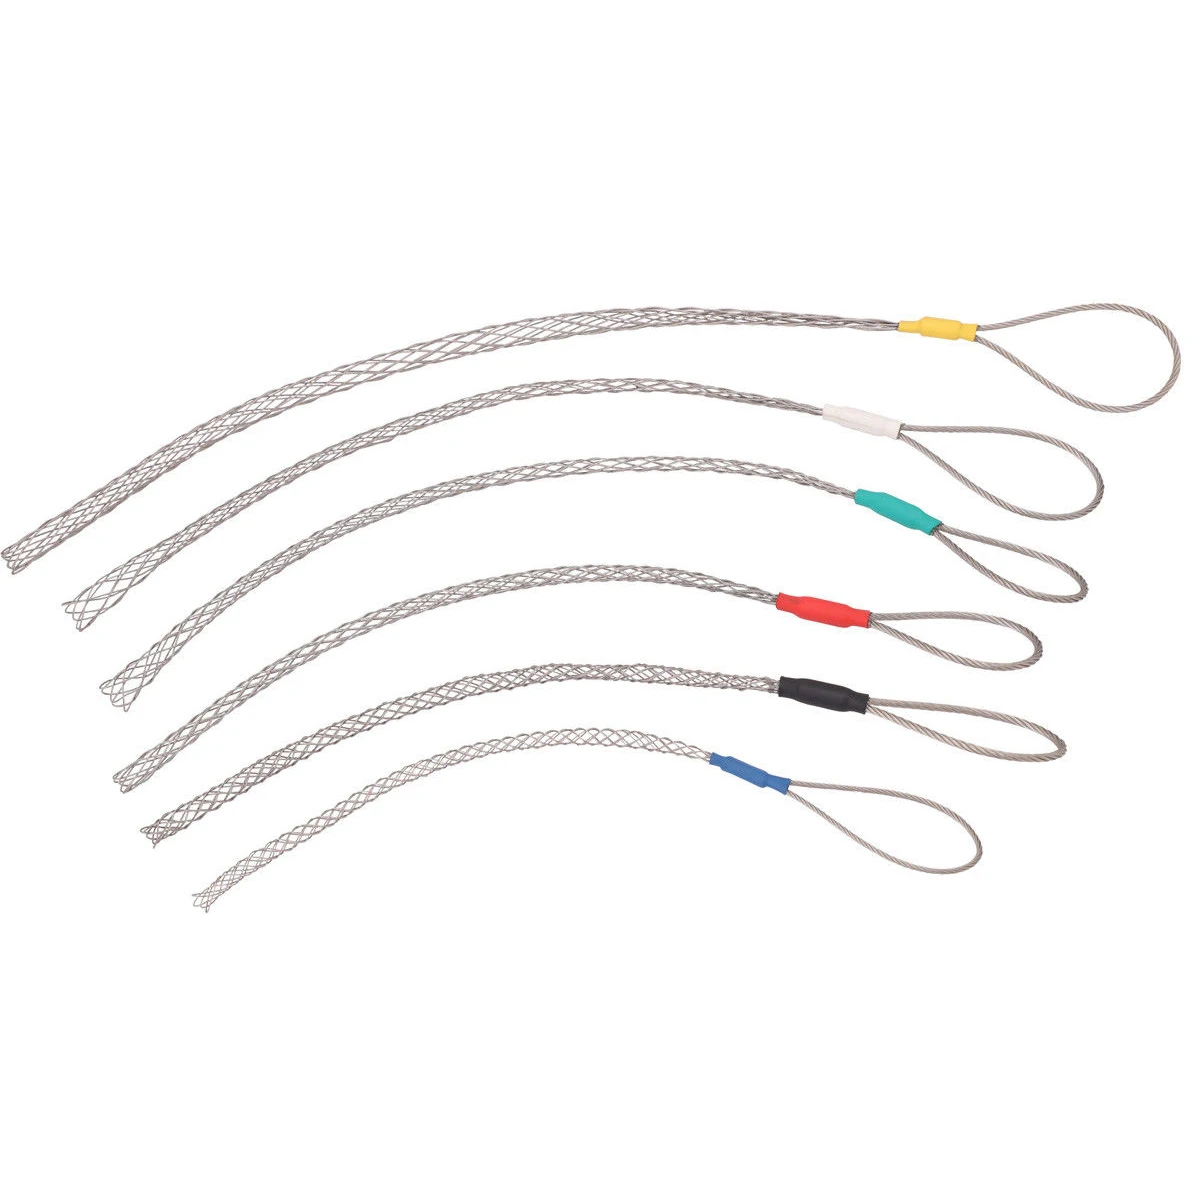 6 цветов оцинкованный кабель тянет носки для Telstra NBN инструменты нержавеющая сталь цвет код для 4 6 10 12 15 20 25 мм